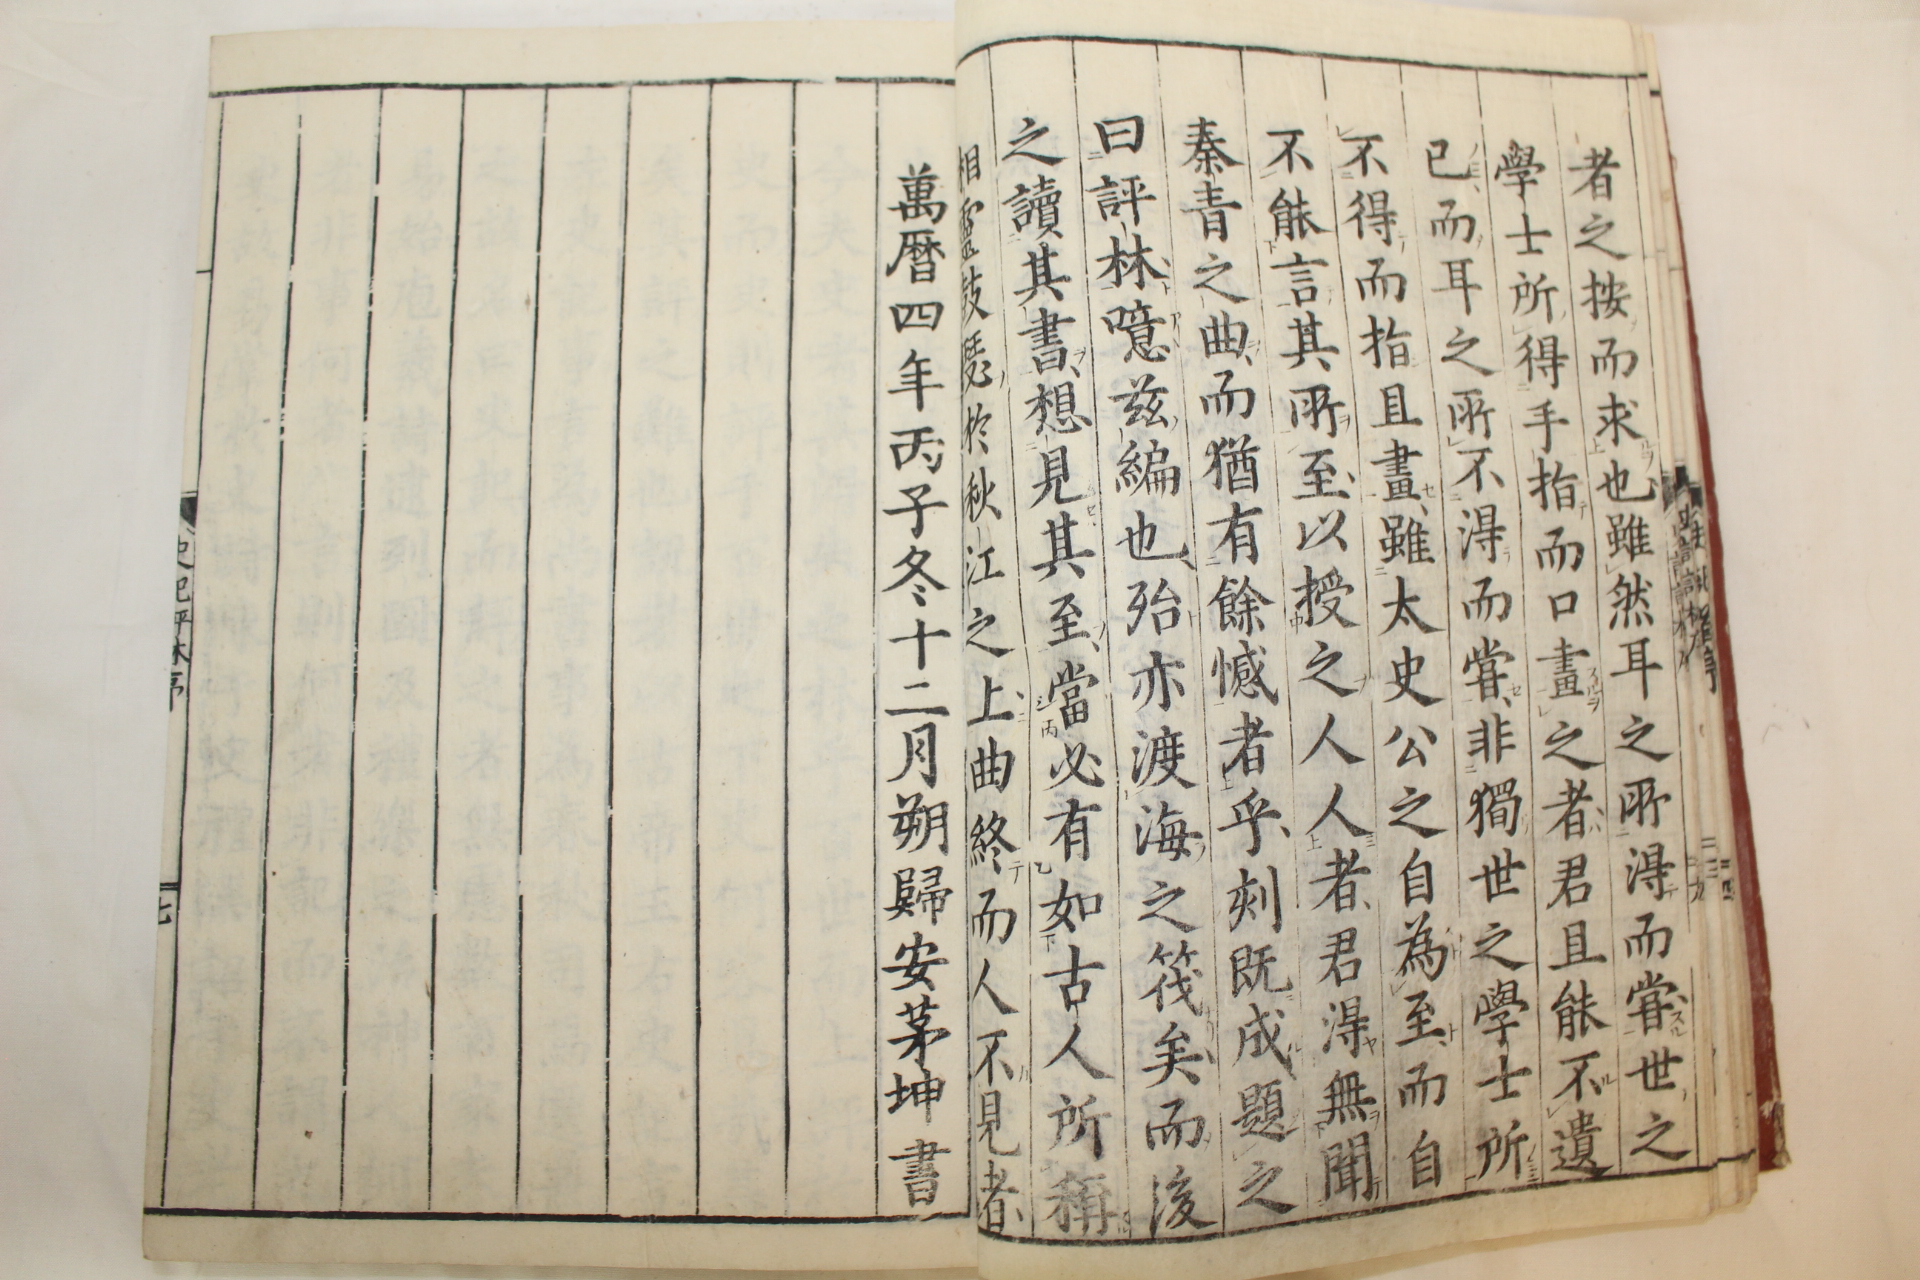 1789년(天明9年) 일본목판본 사기평림(史記平林) 22책